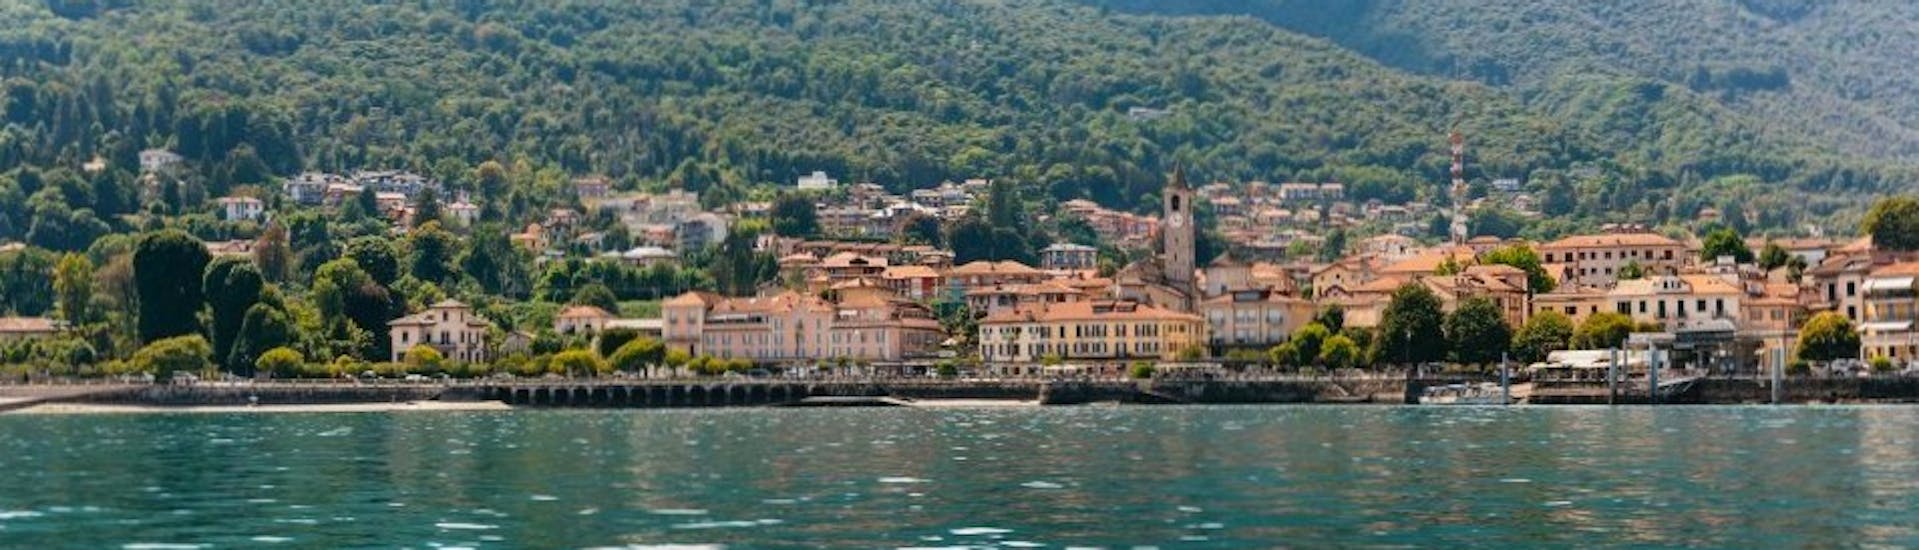 Privé boottocht naar Lake Maggiore met toeristische attracties.